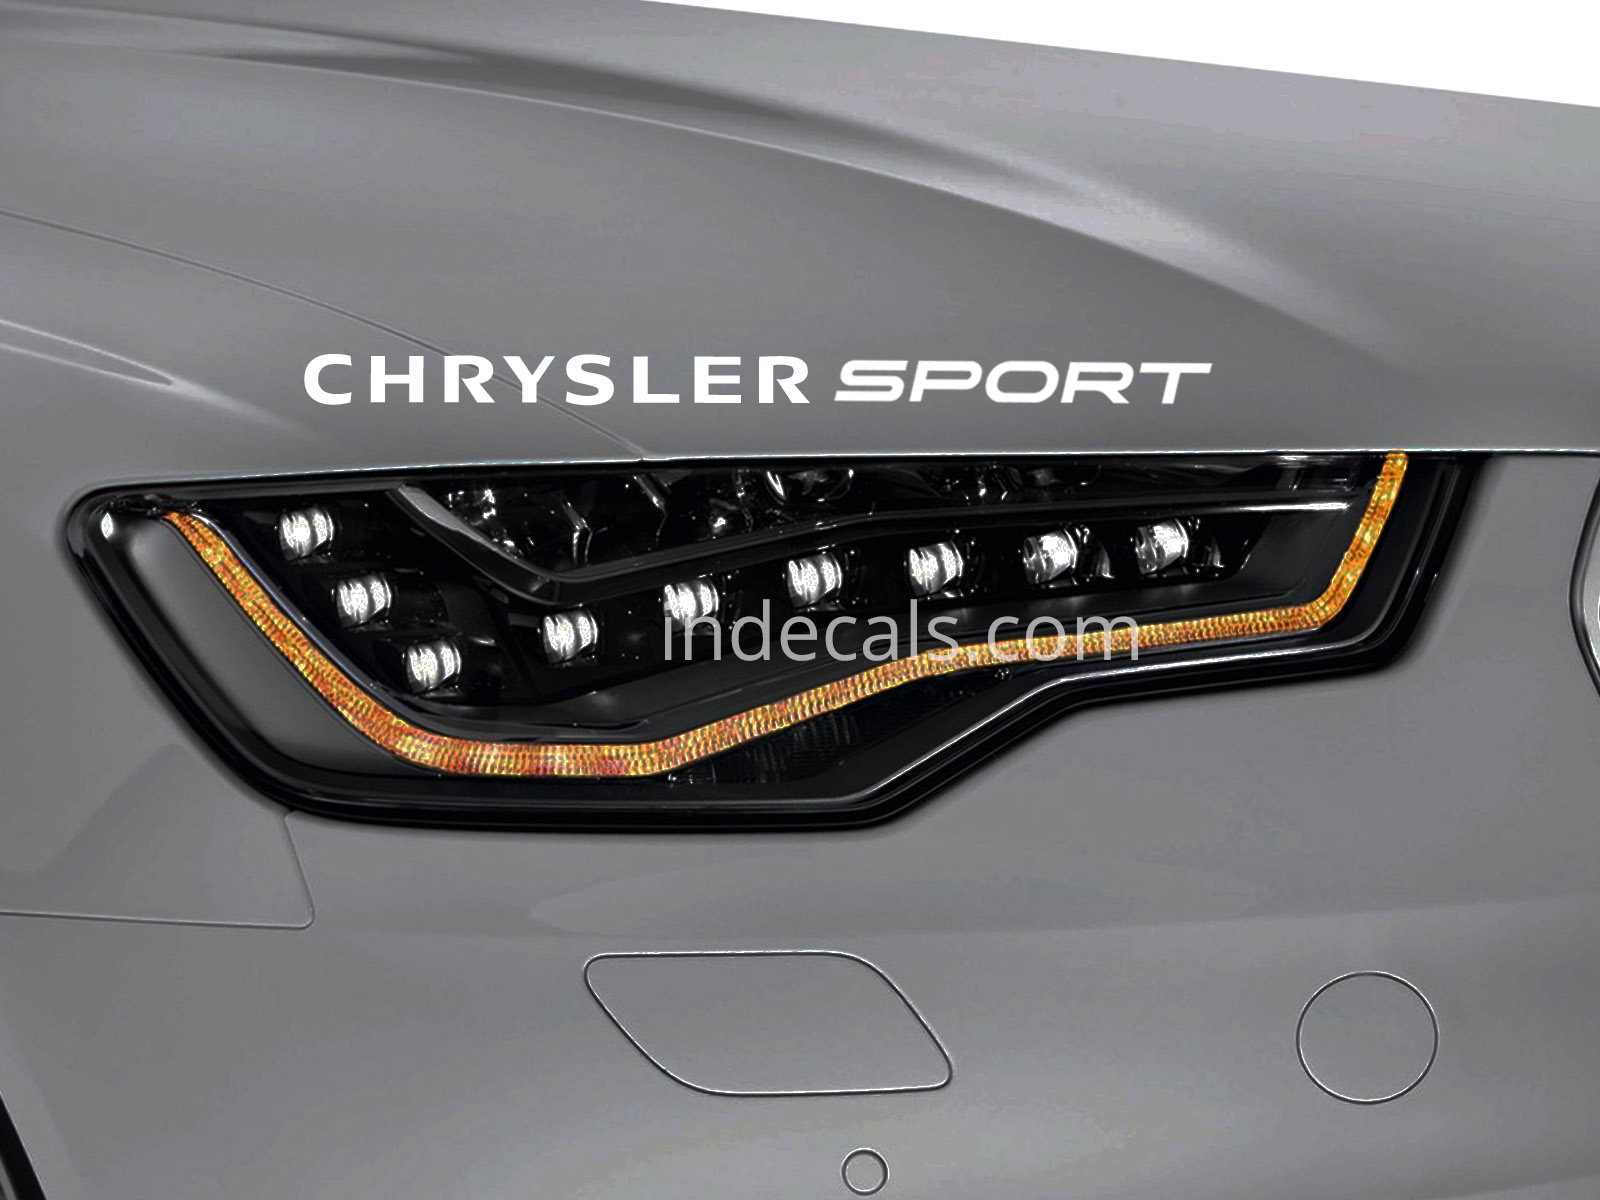 1 x Chrysler Sport Sticker for Eyebrow - White